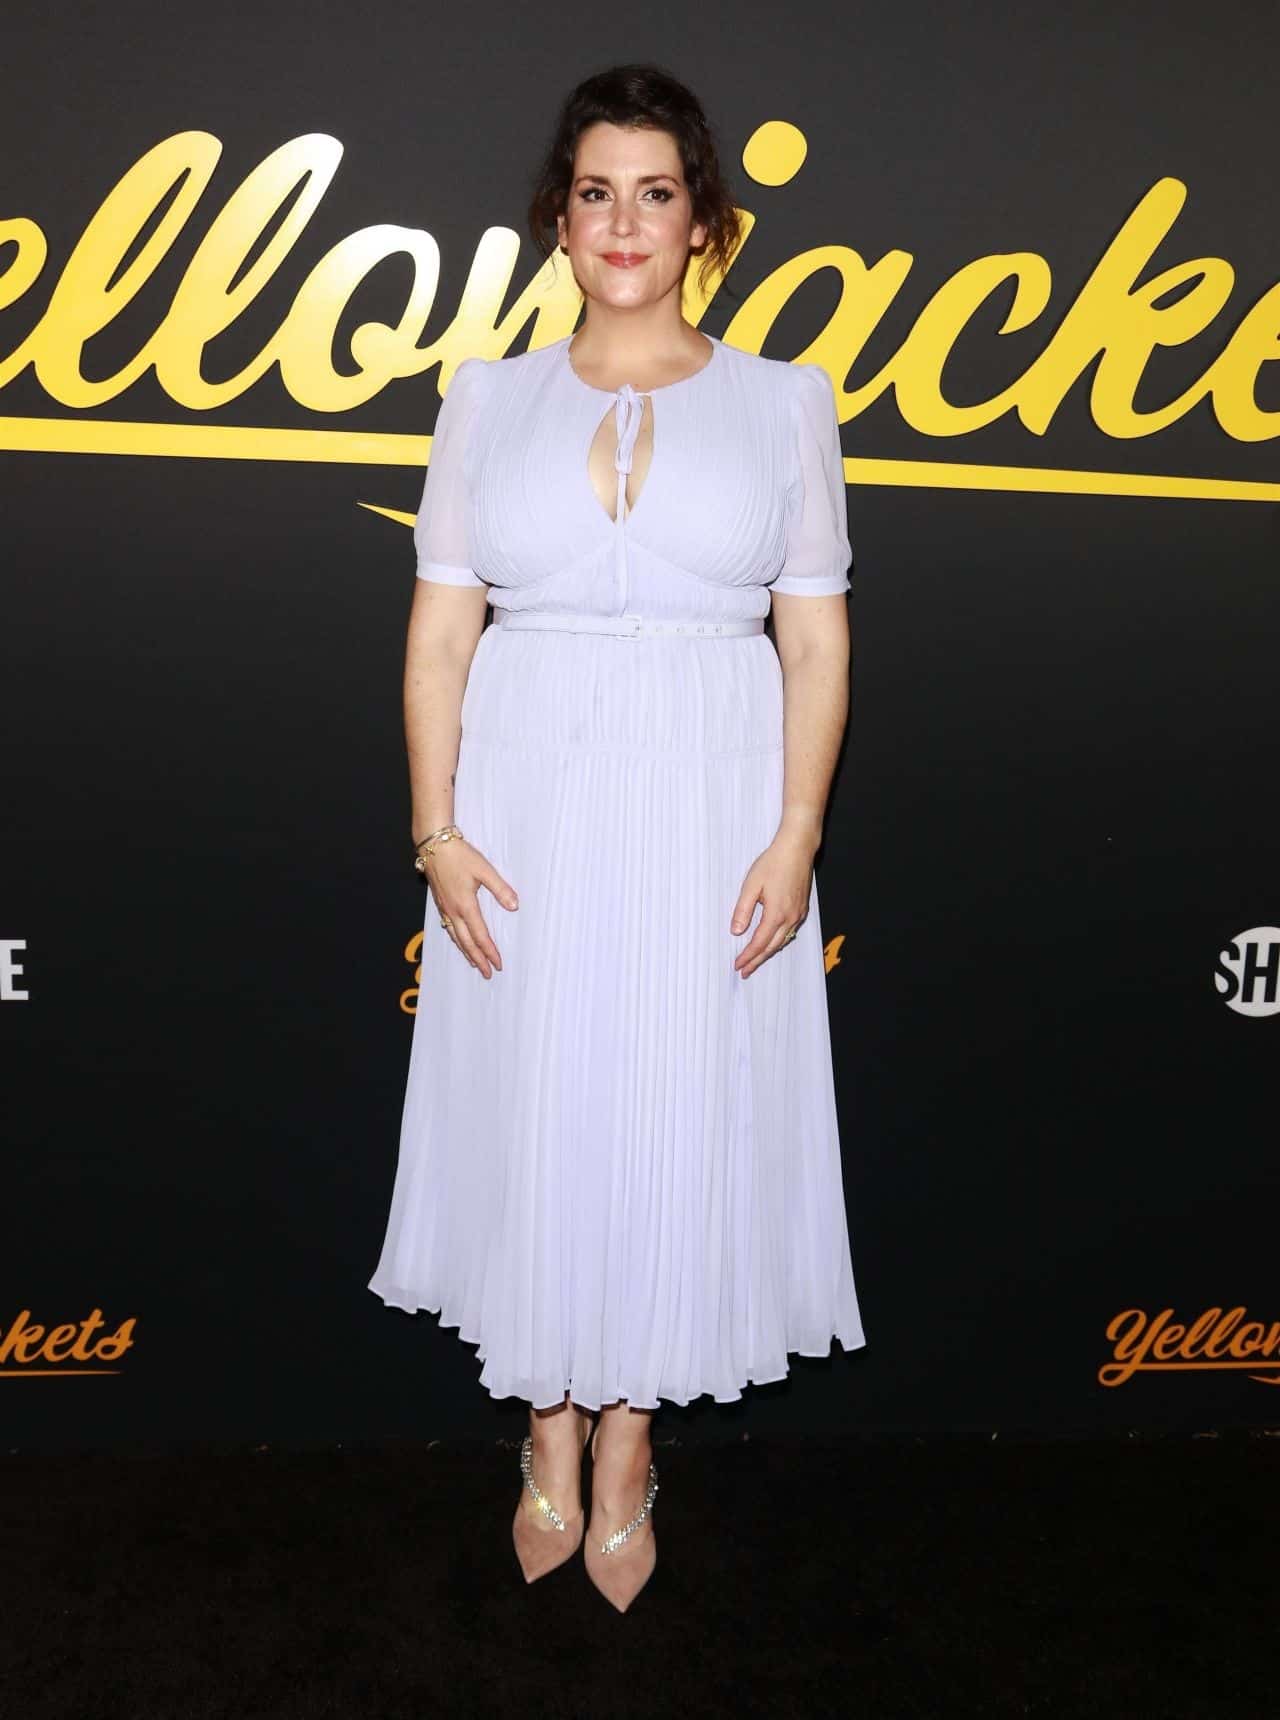 Melanie Lynskey Attends “Yellowjackets” Premiere in Los Angeles